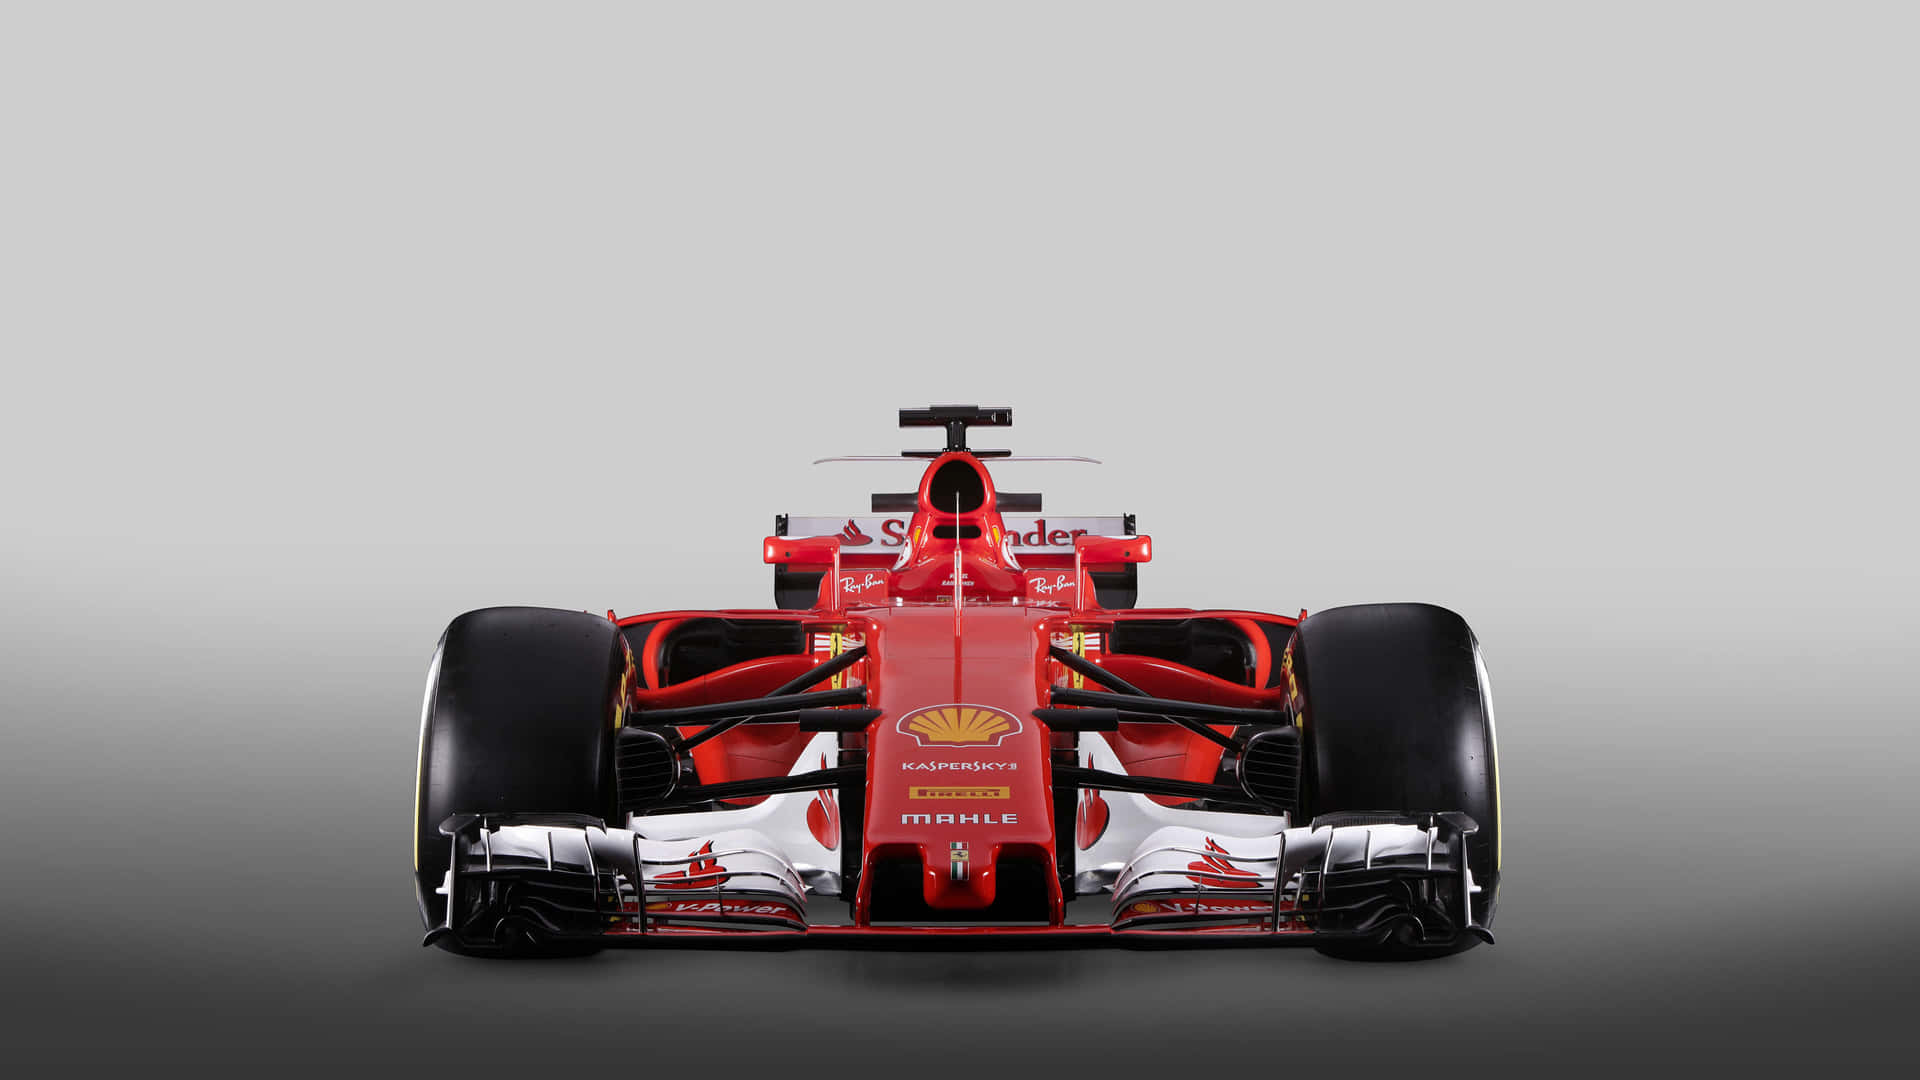 Ferrarif1-bil På En Grå Bakgrund